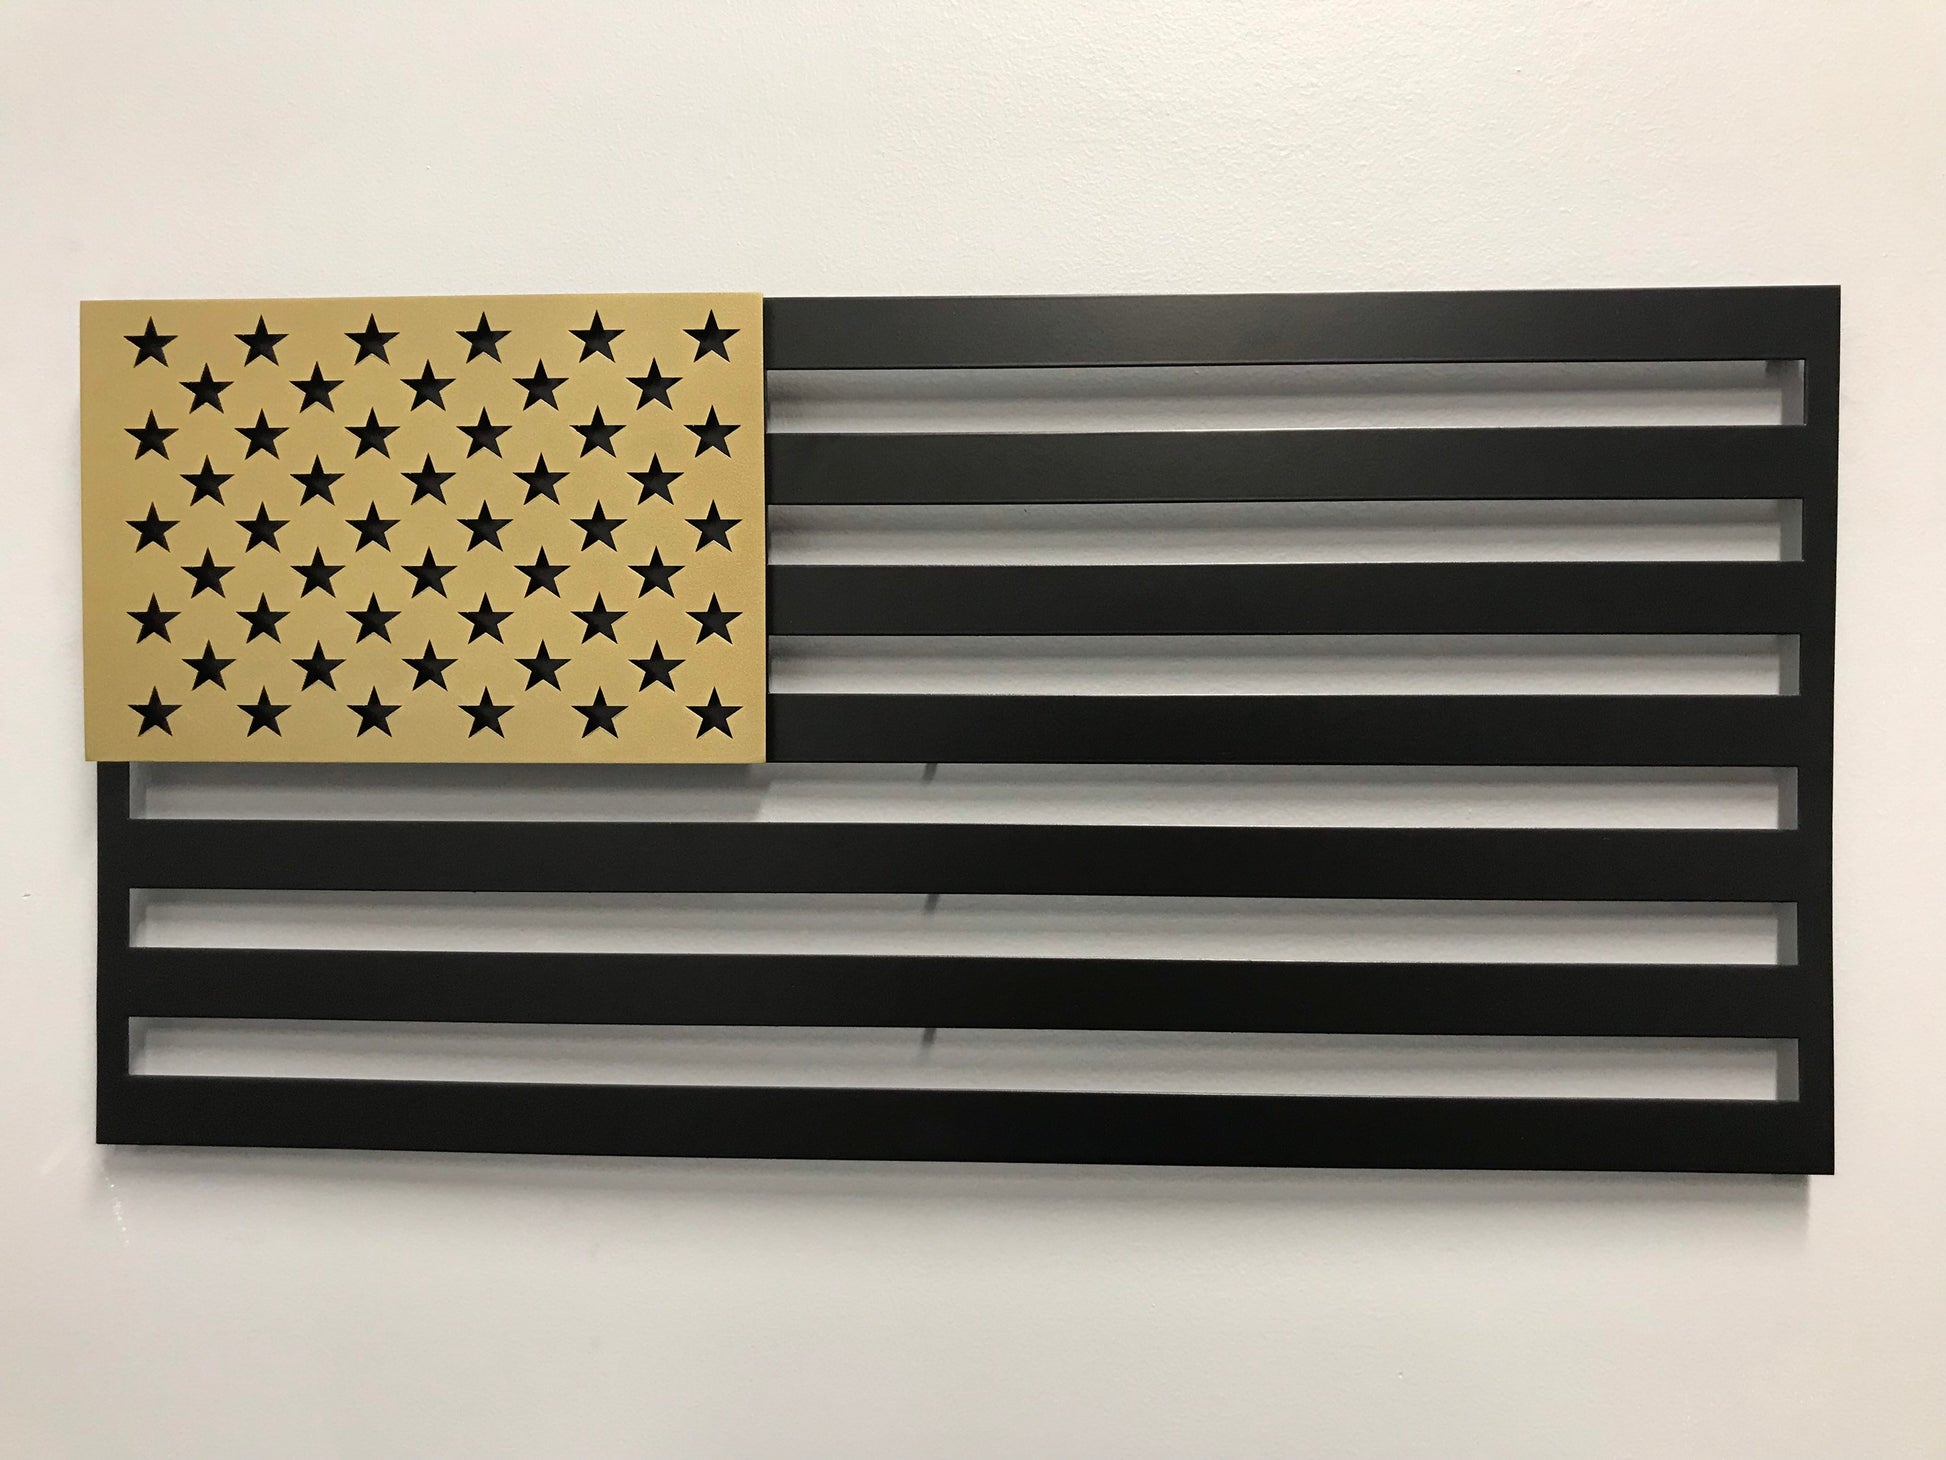 US FLAG - Stars On Stripes - Prismatic Metal